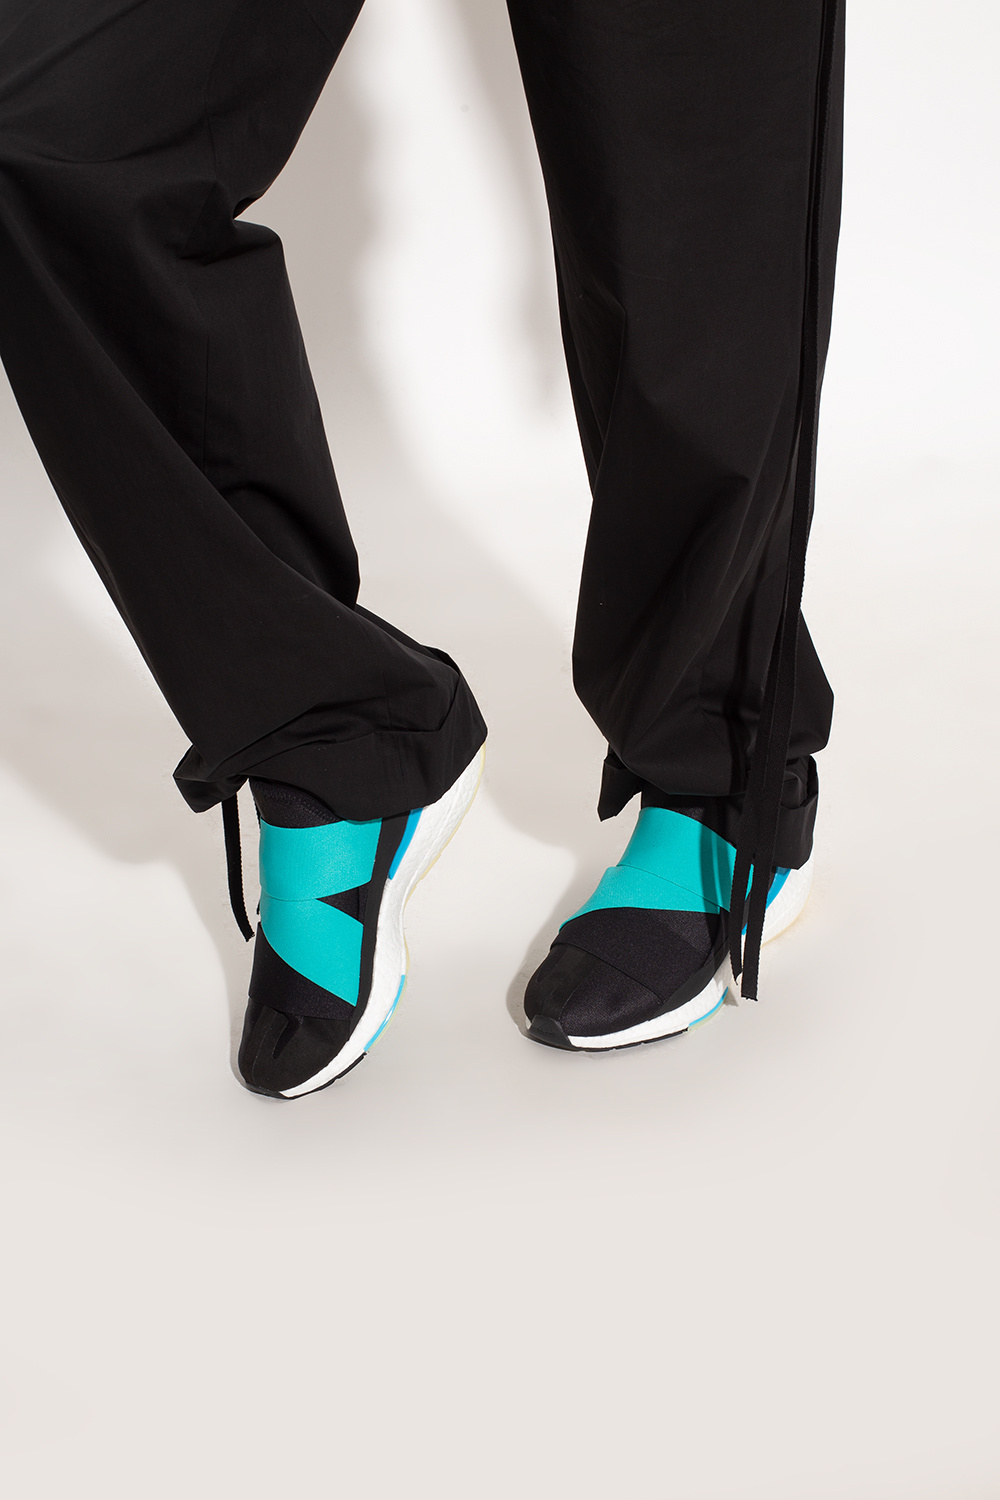 Y-3 Yohji Yamamoto ‘Ultraboost’ sneakers